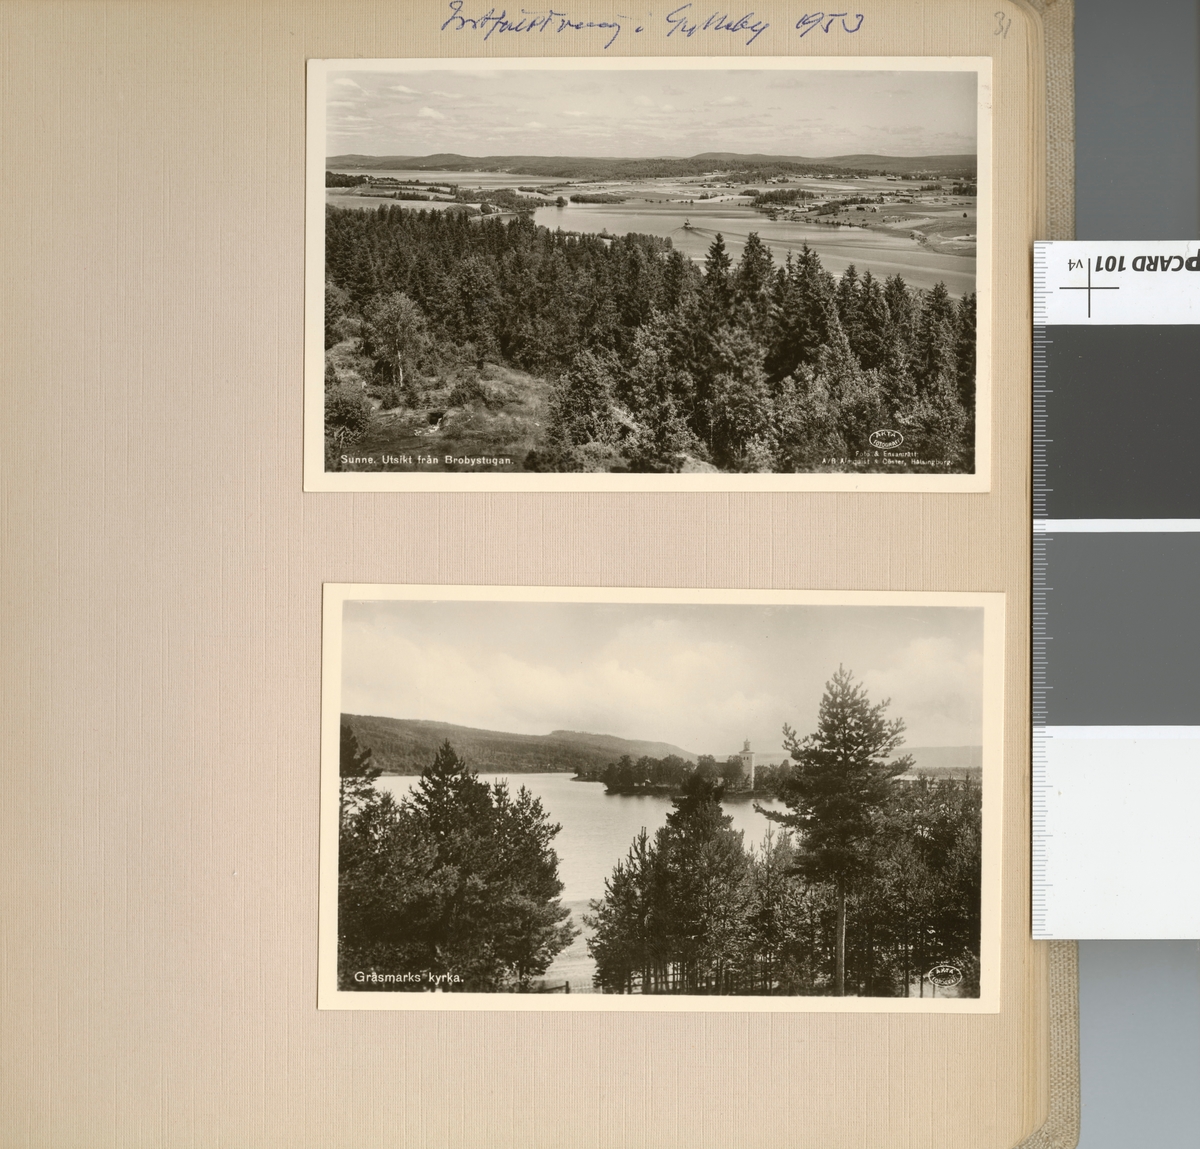 Text i fotoalbum: "Intfältövning i Gylleby 1953. Sunne. Utsikt från Brobystugan".